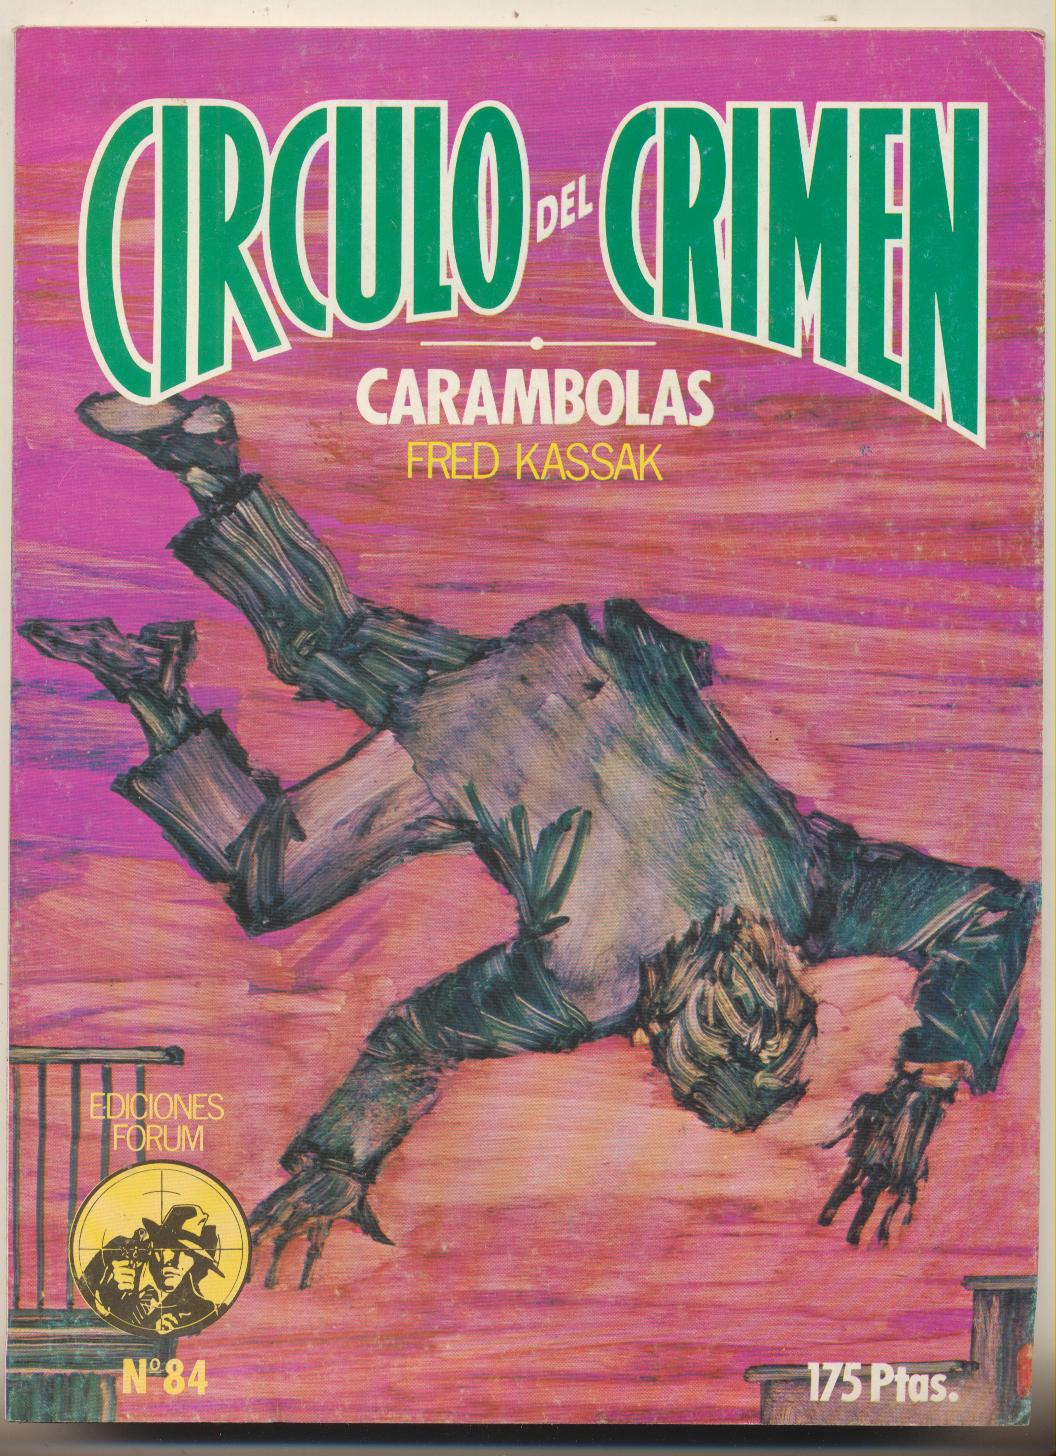 Círculo del Crimen nº 84. Carambolas por Fred Kassak